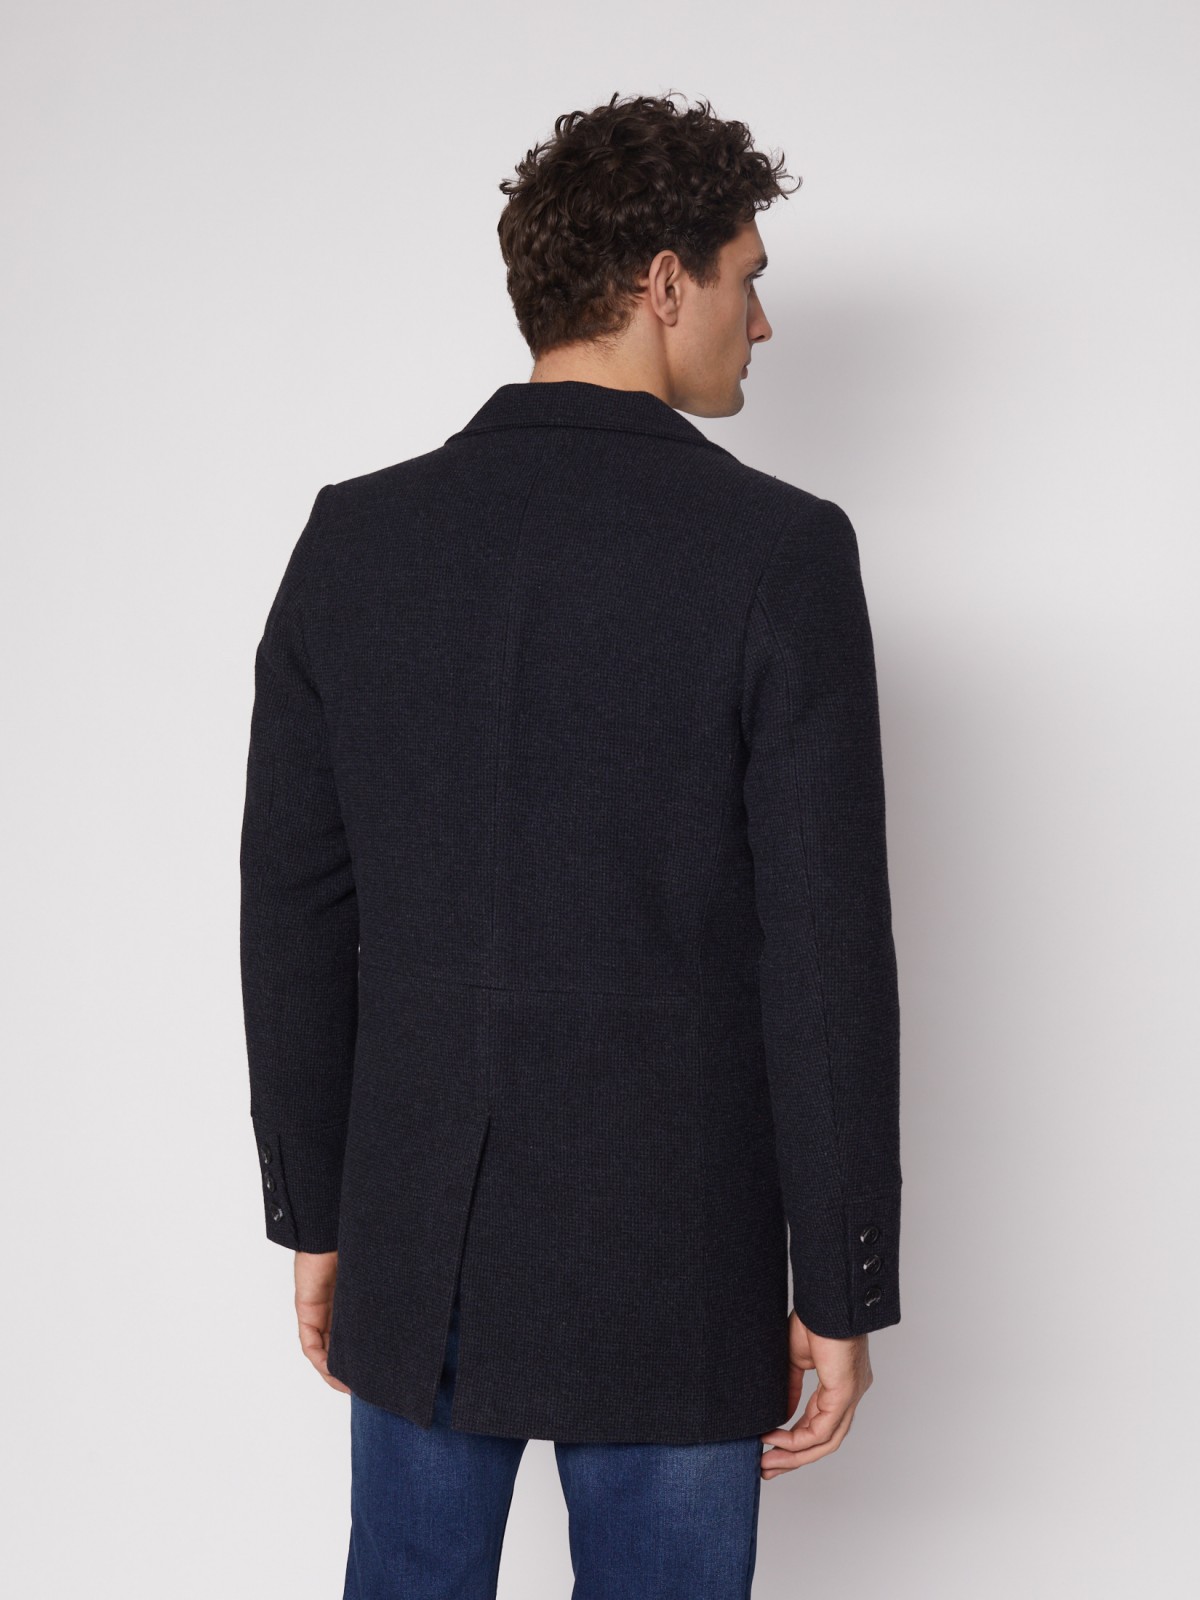 Утеплённое однобортное пальто zolla 012135839014, цвет темно-синий, размер S - фото 6